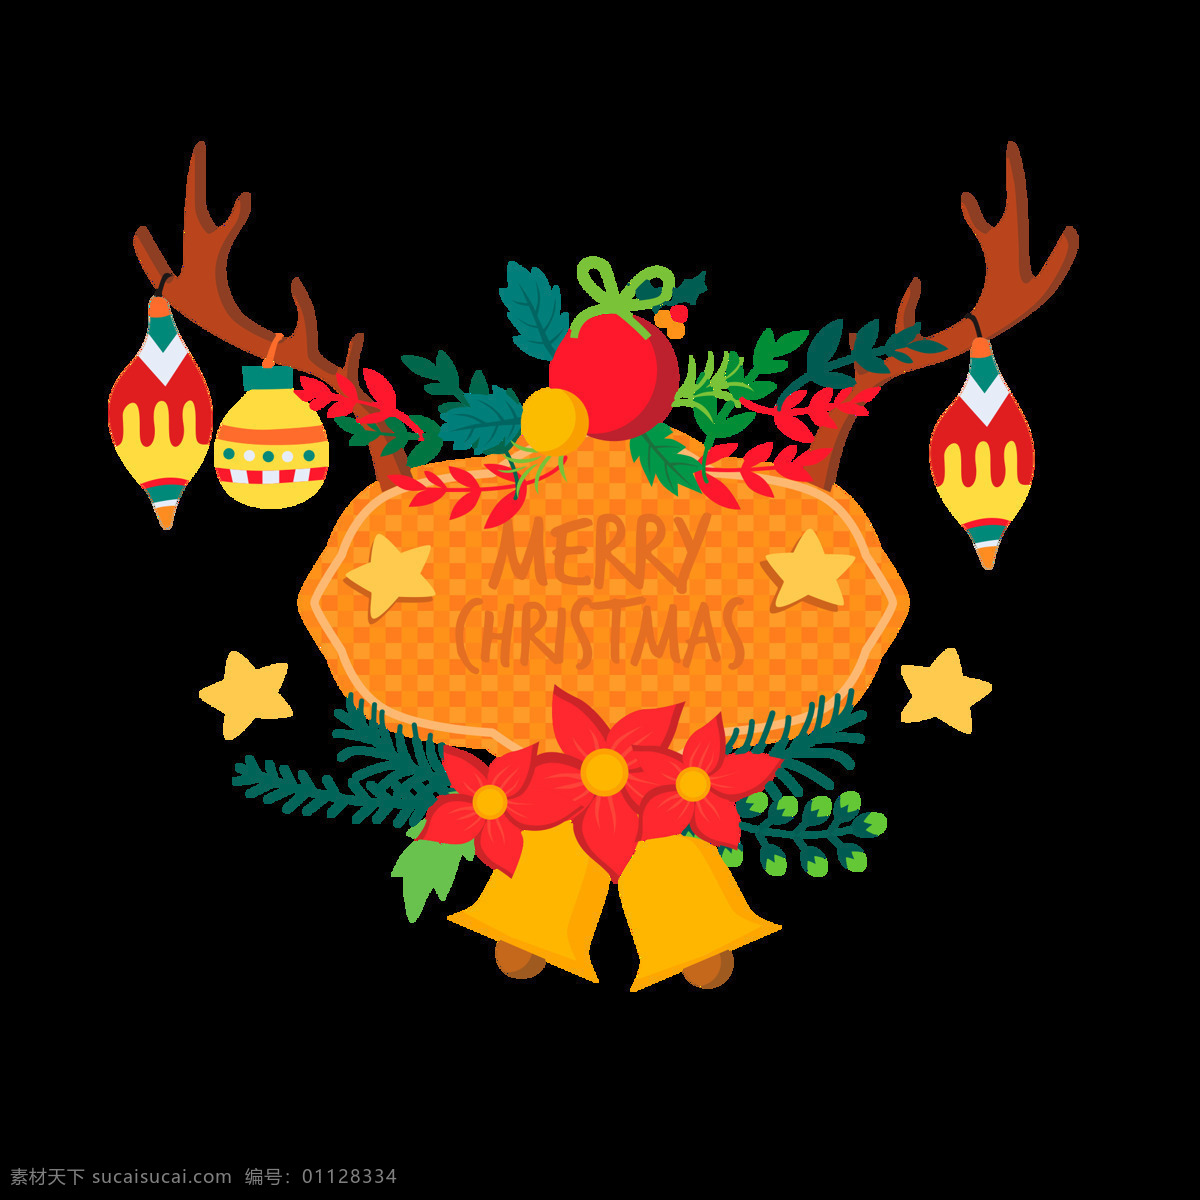 抽象 圣诞 麋鹿 装饰 元素 2018圣诞 抽象麋鹿 节日元素 铃铛 设计素材 设计元素 圣诞节 圣诞节快乐 圣诞节装饰 圣诞素材 圣诞装扮